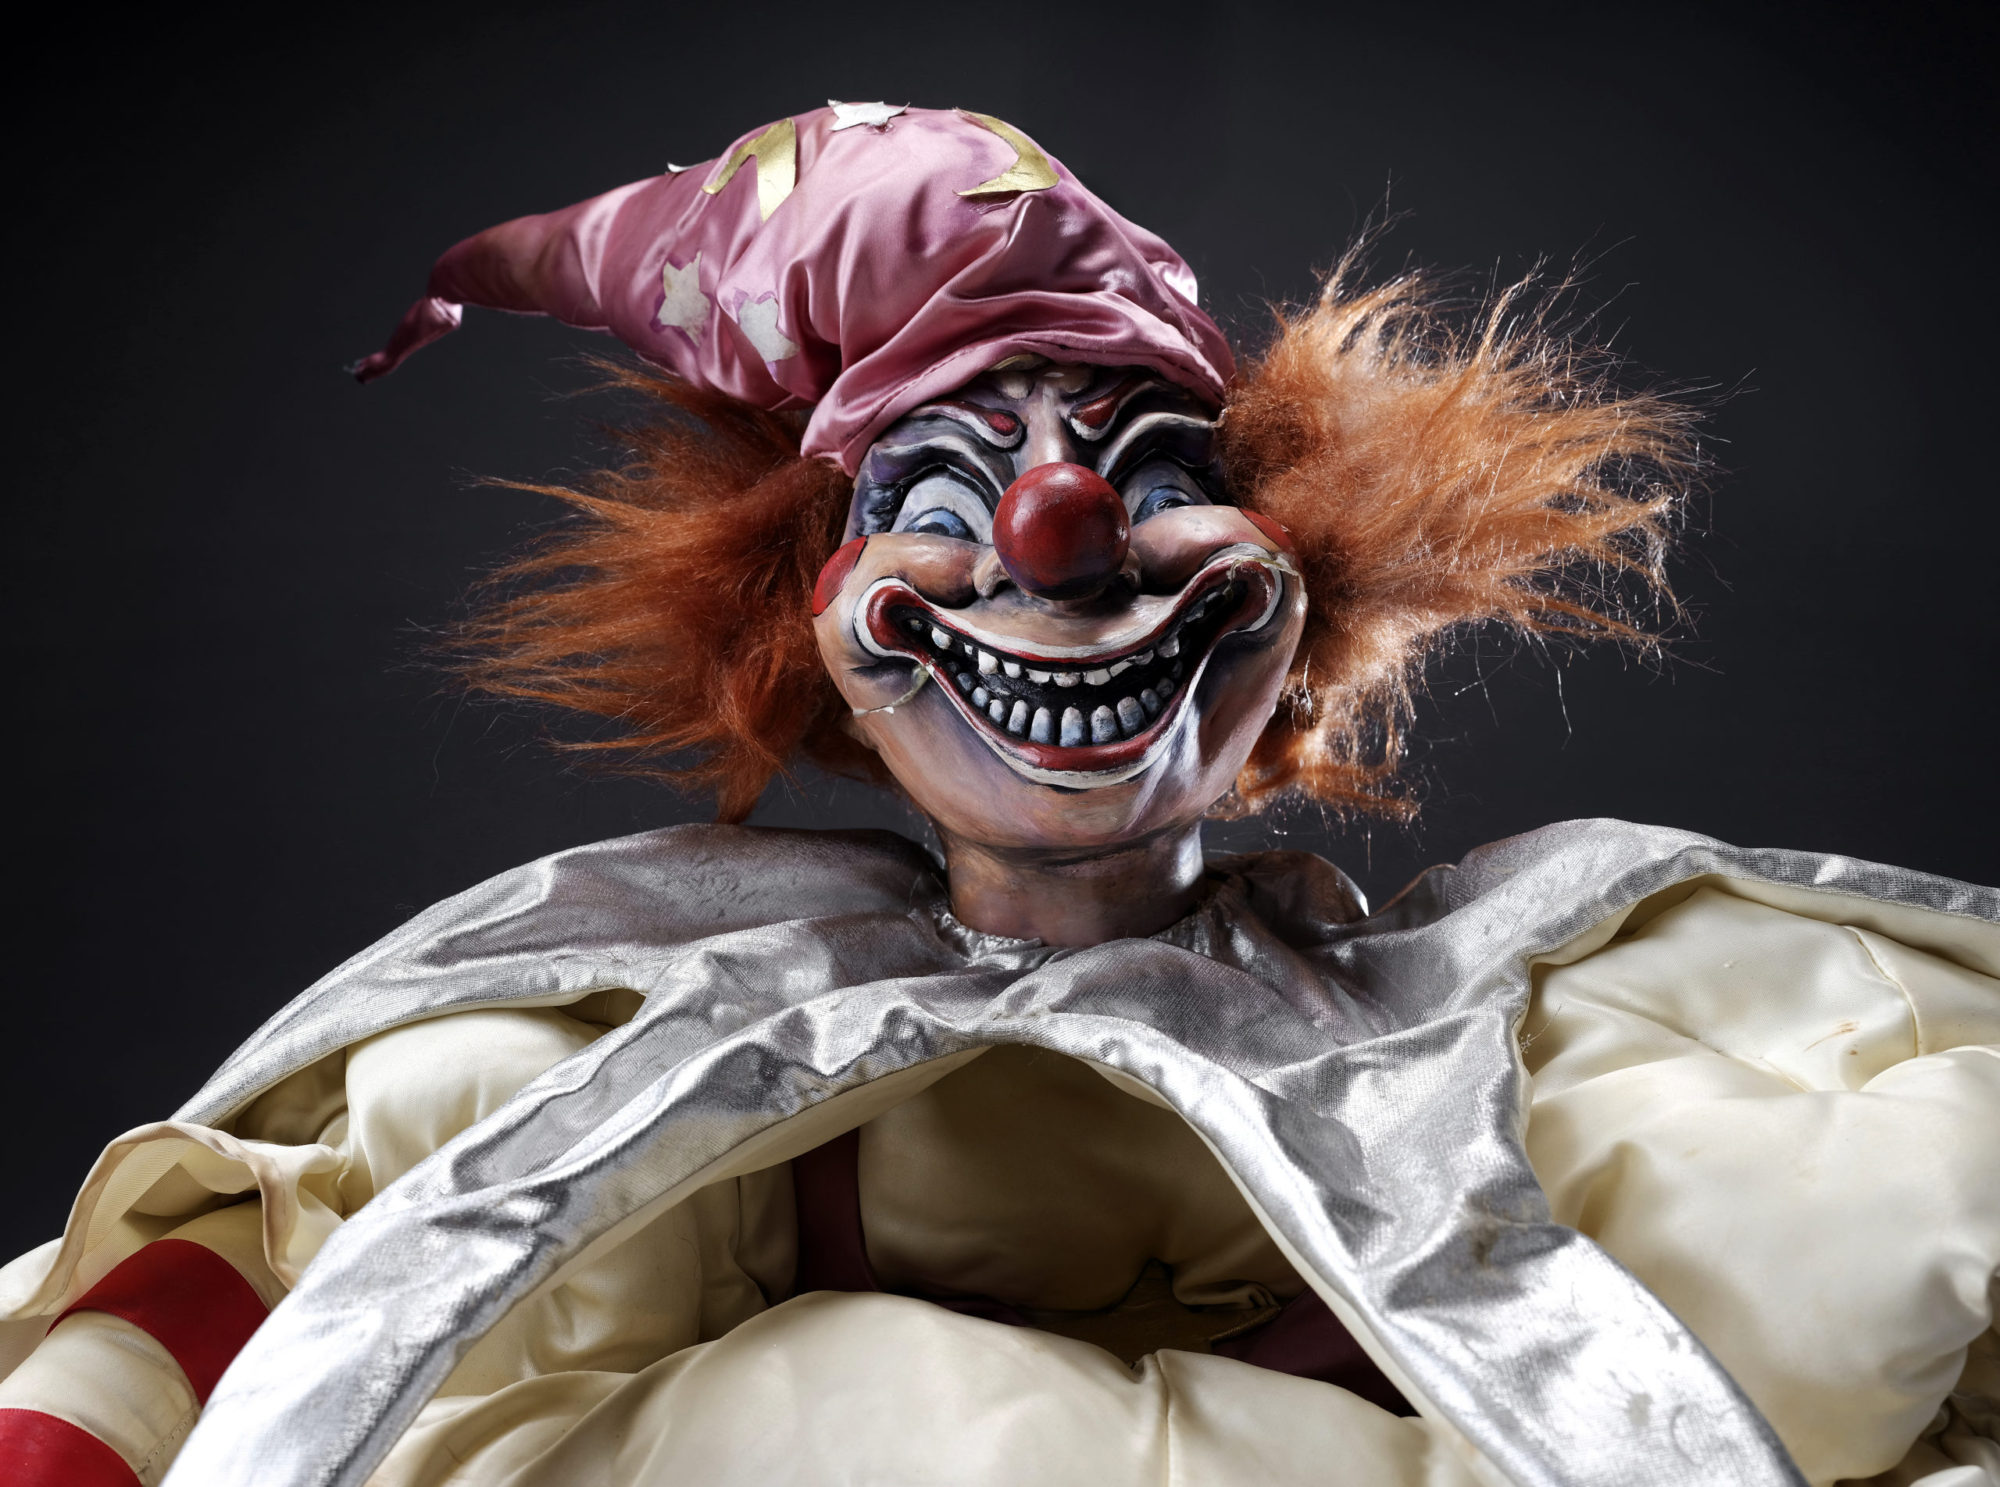 Poltergeist clown doll